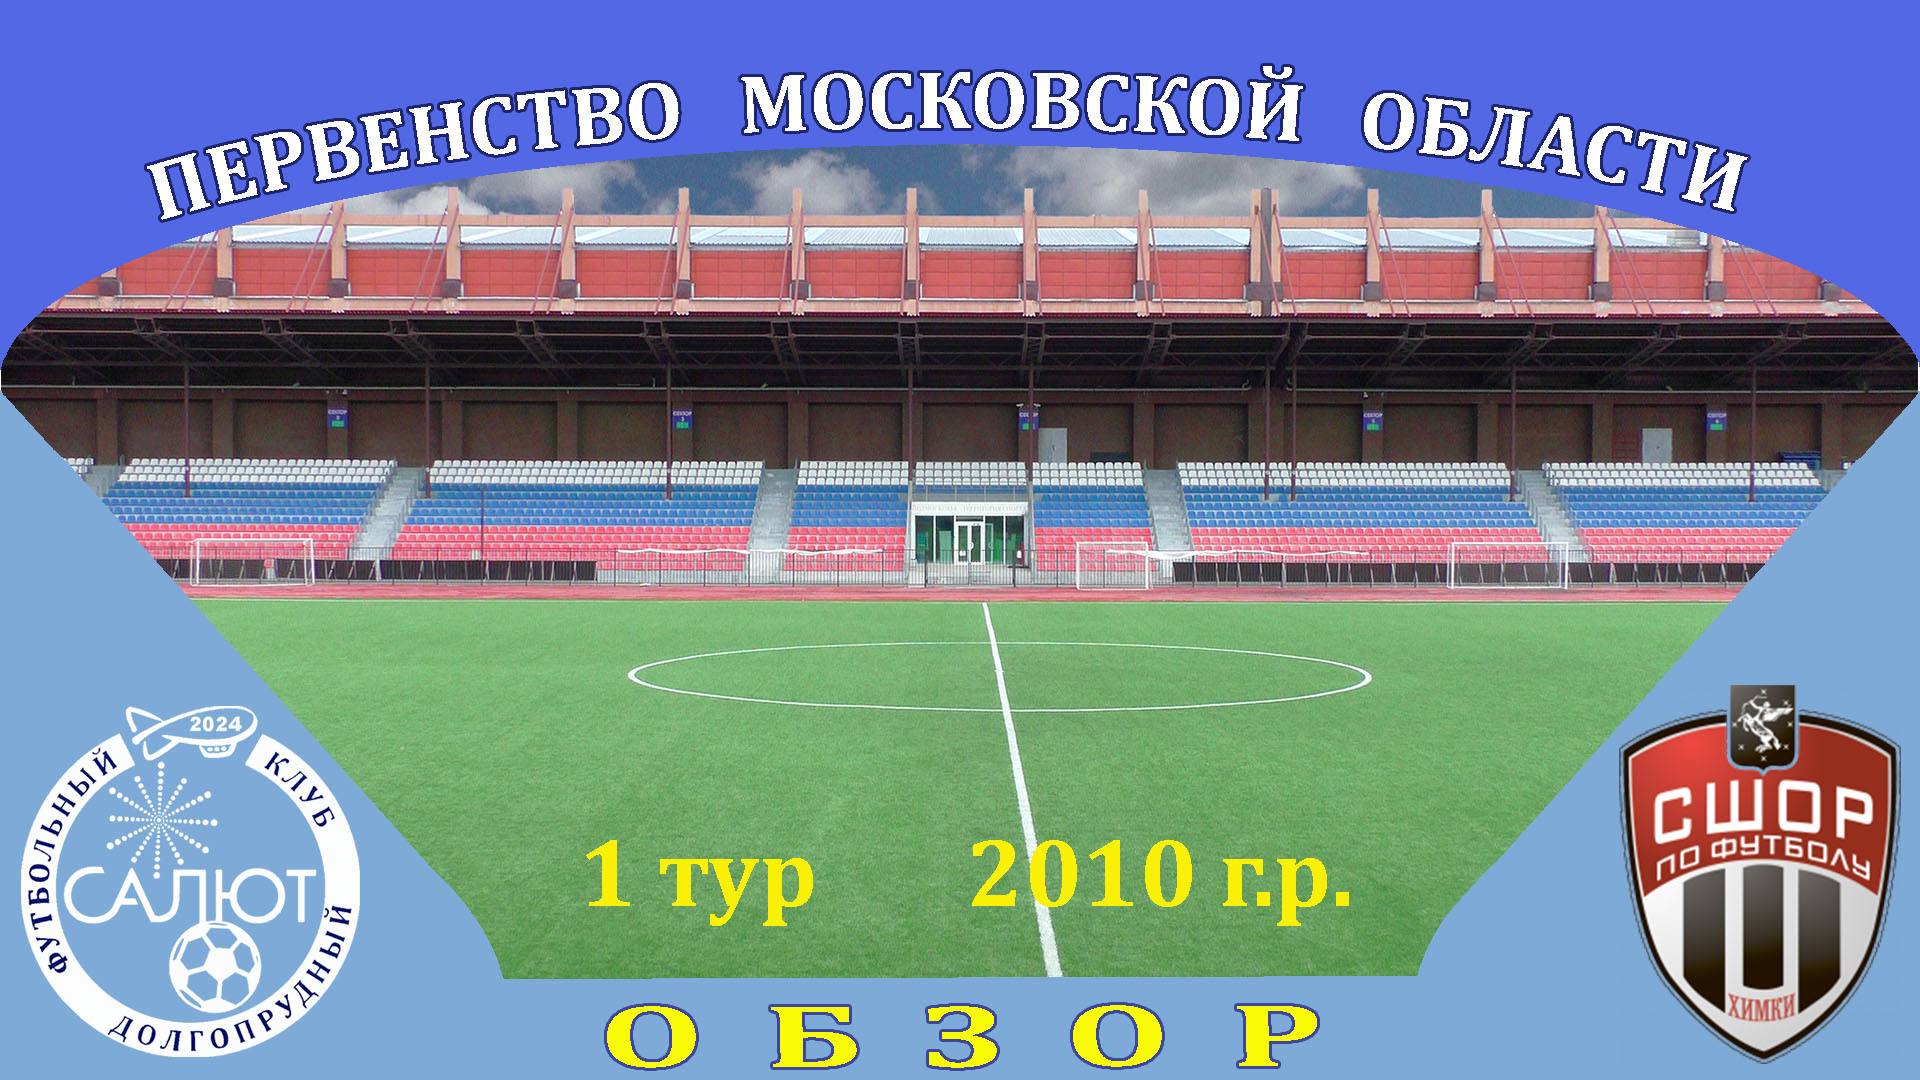 Обзор игры  ФСК Салют 2010  2-1  СШОР Сходня